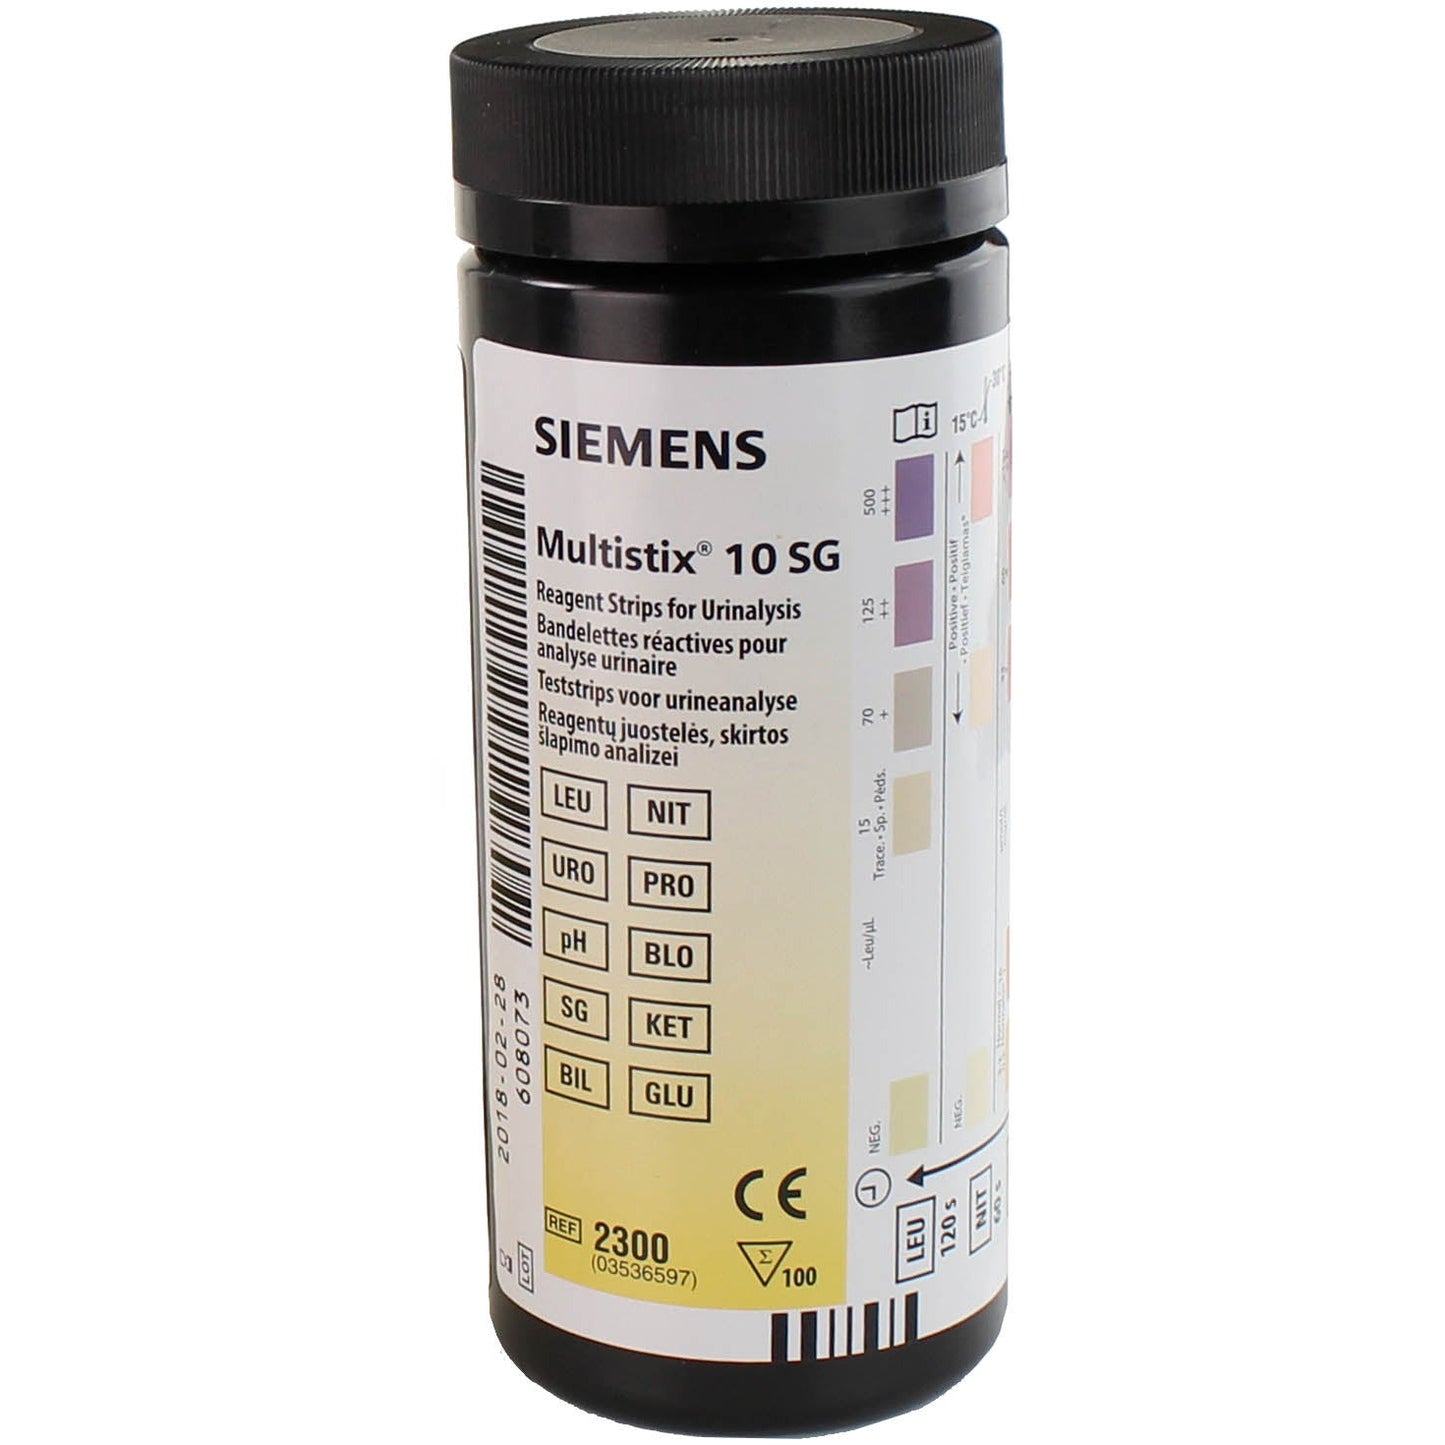 Siemens Multistix 10SG Urinalysis Strips x 100